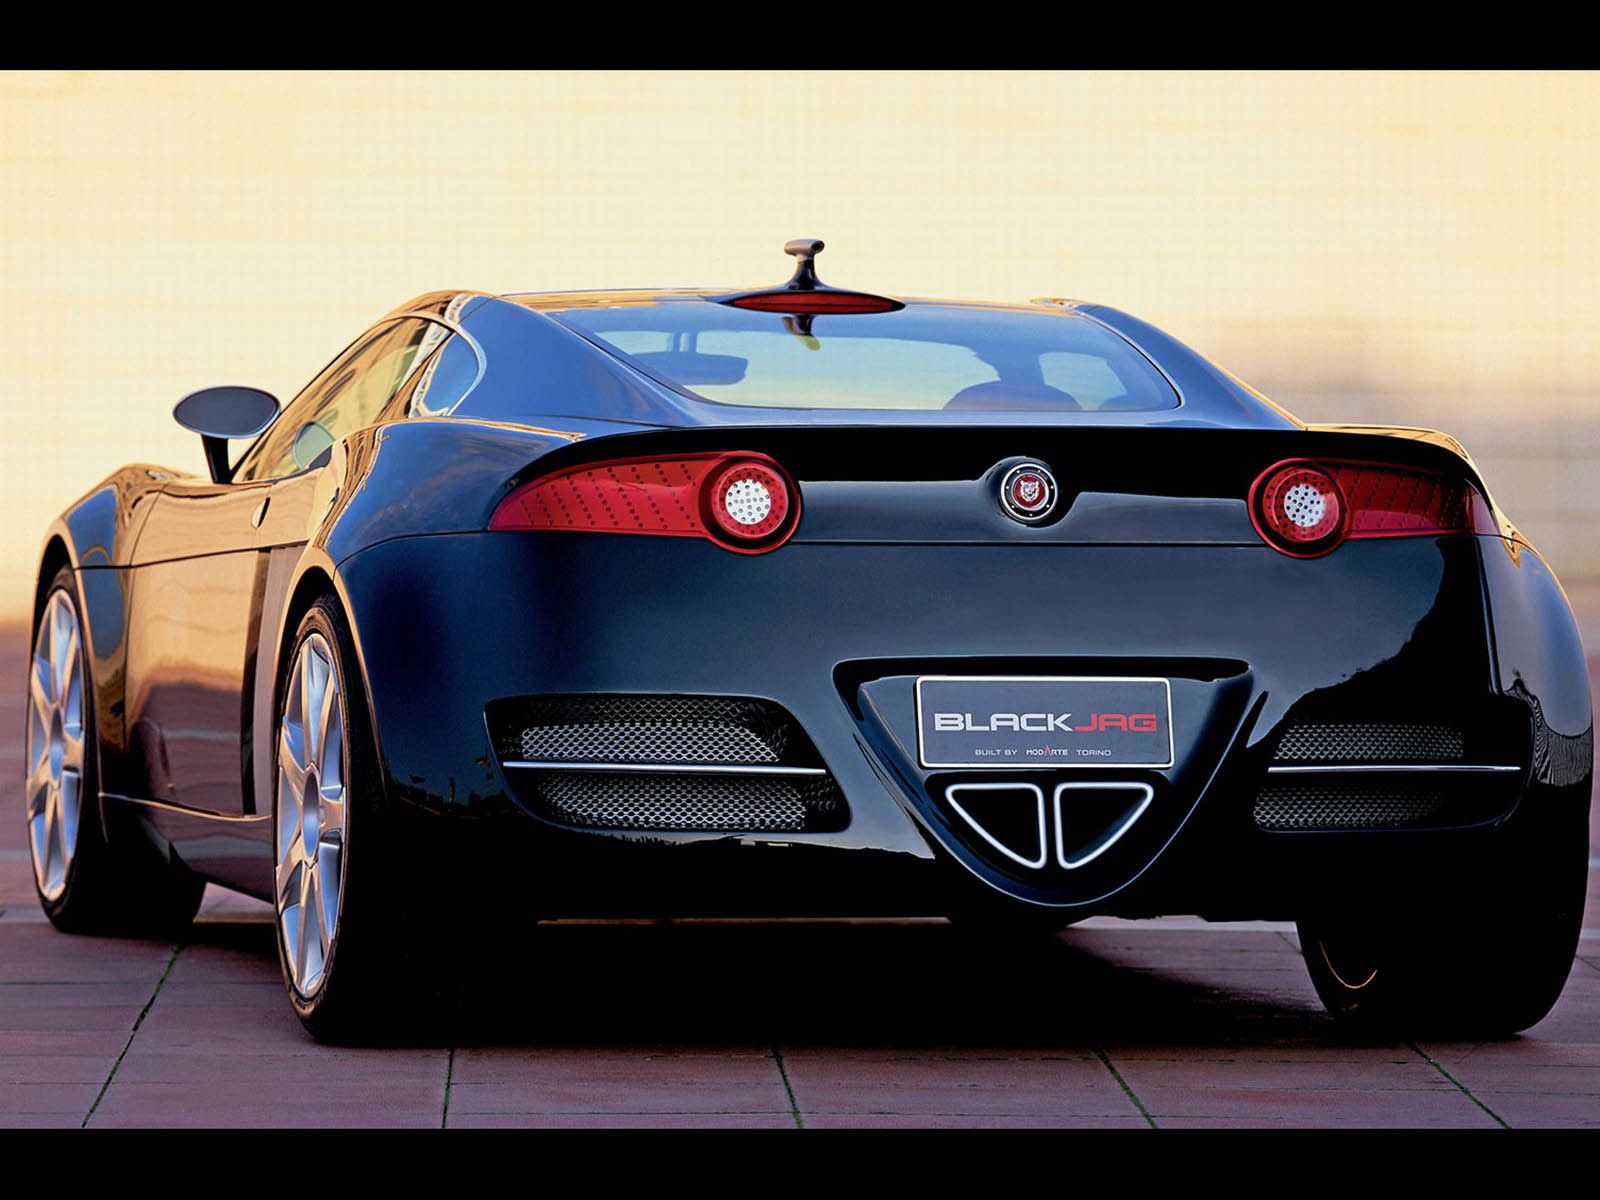 2004 Jaguar Blackjag Concept